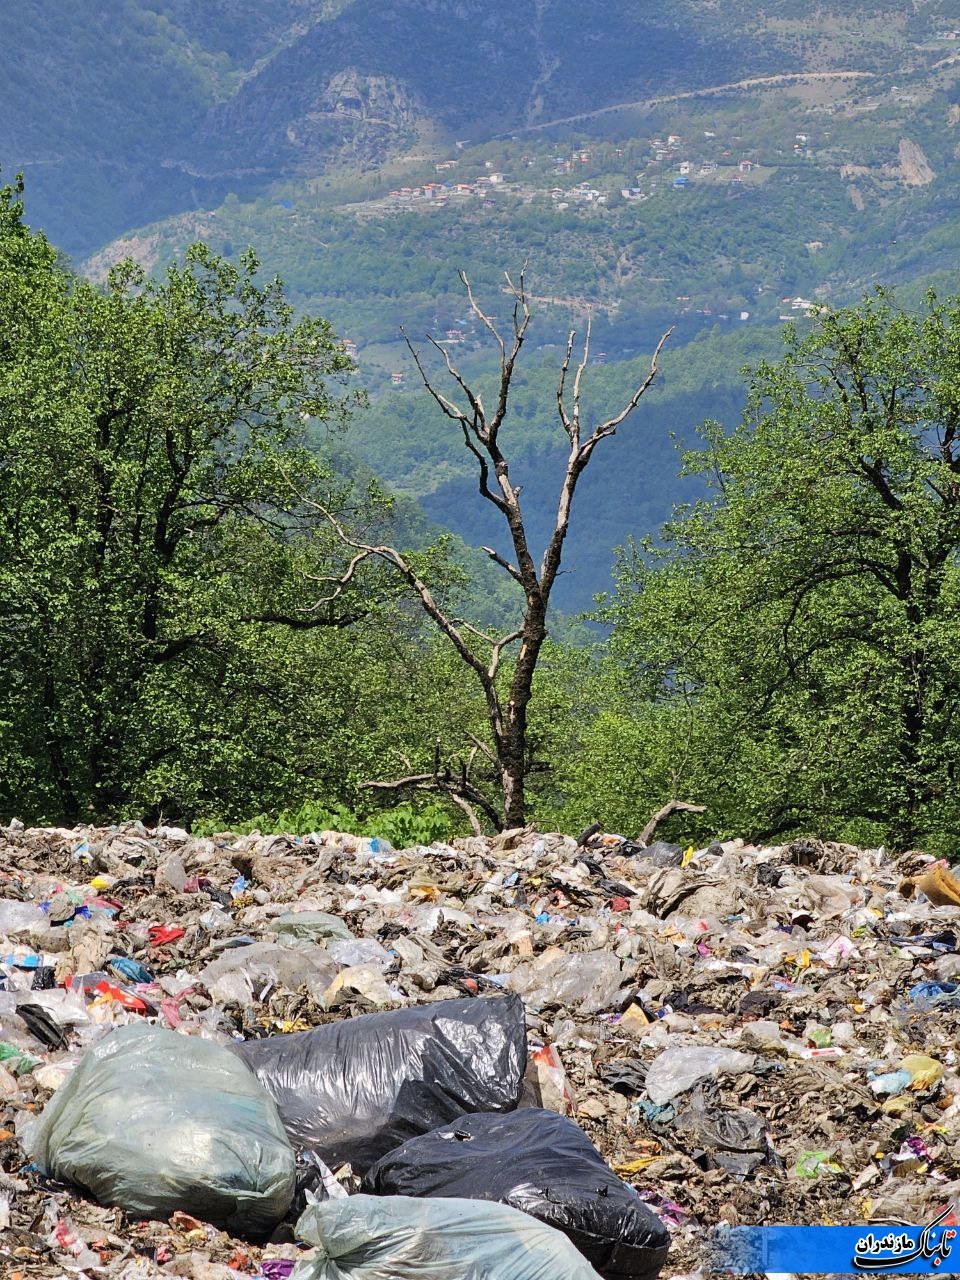 فاجعه در نابودی طبیعت با انباشت زباله در جنگل کلاکولی رامسر+ تصویر